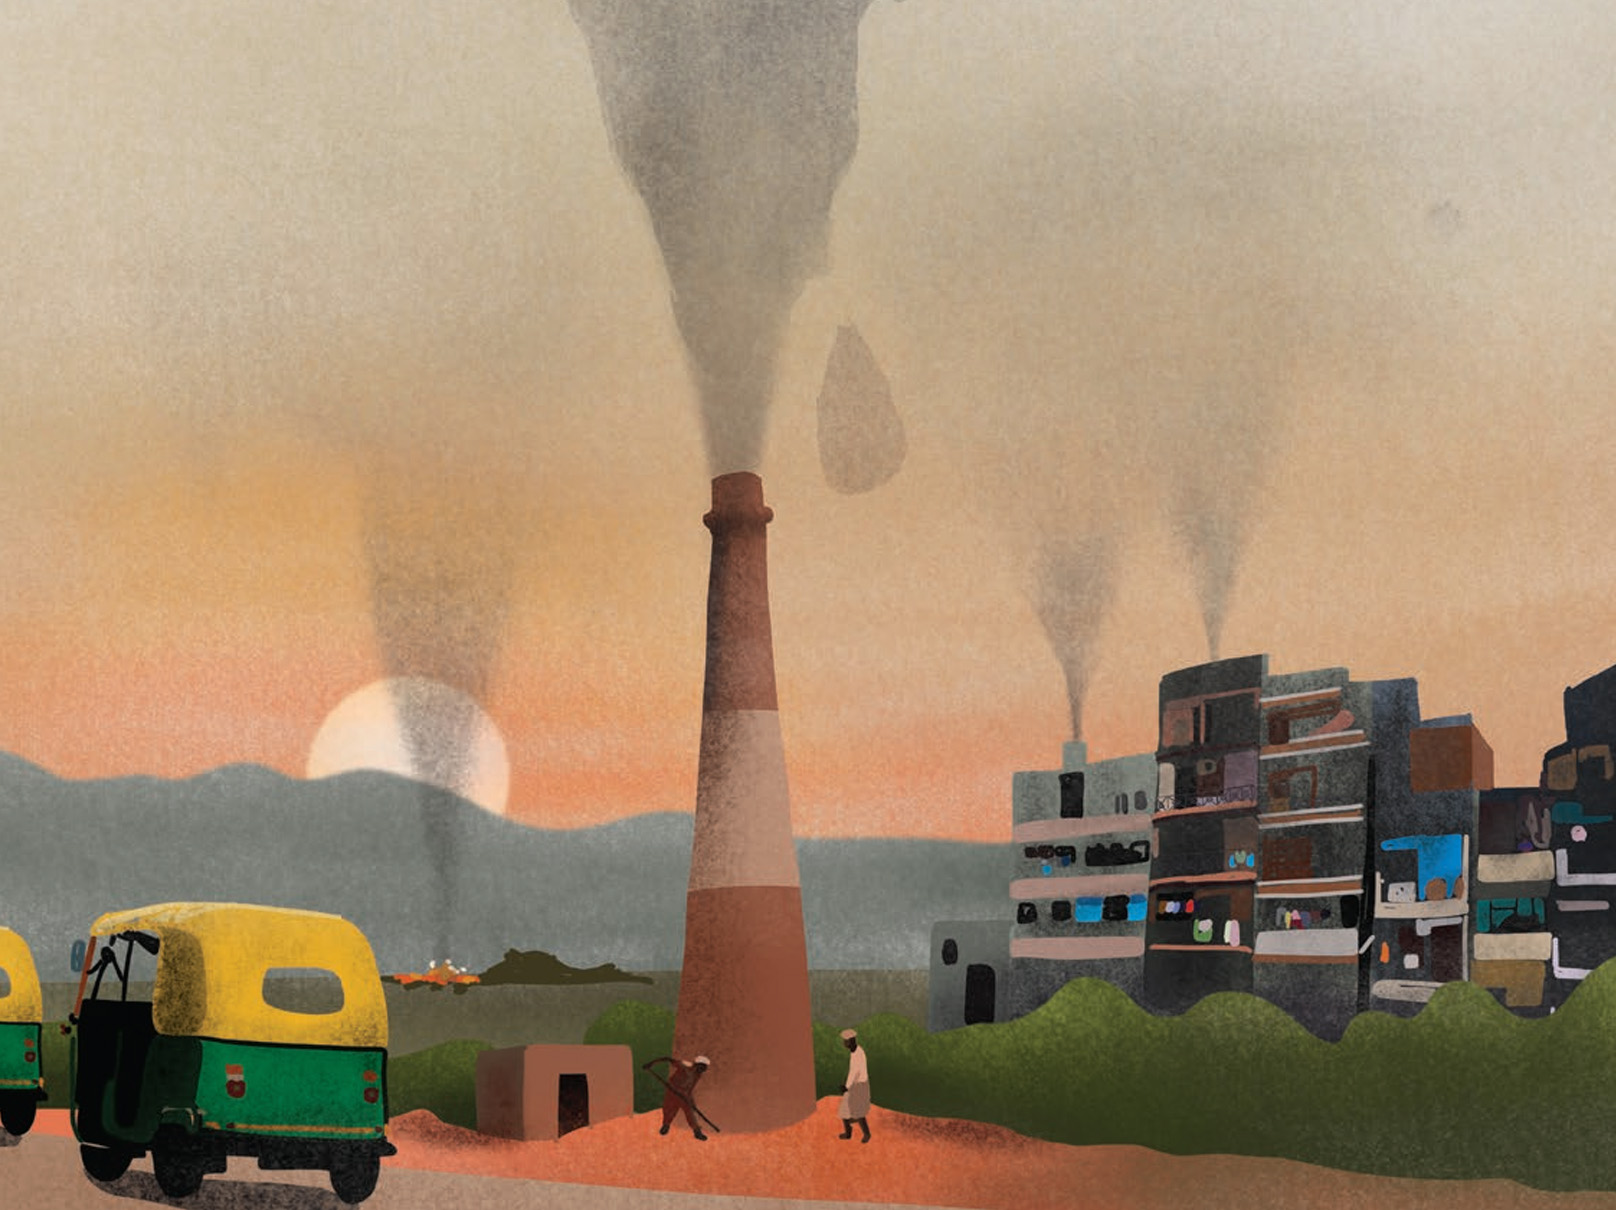 Стремление к чистому воздуху: загрязнение воздуха и общественное здравоохранение в Южной Азии